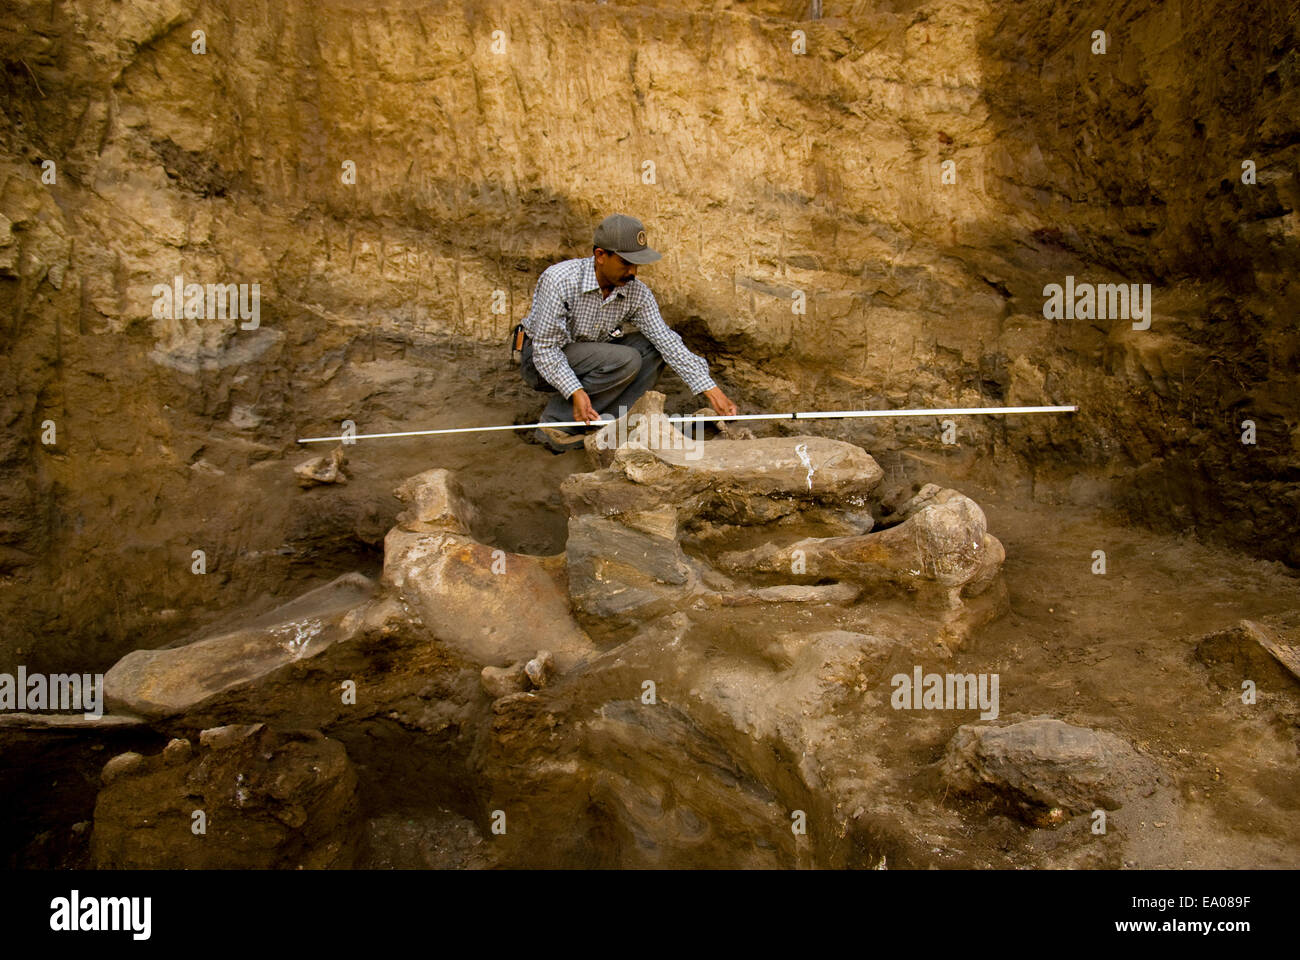 El paleontólogo Iwan Kurniawan está trabajando en el sitio de excavación de un elefante extinto, Elephas hysudrindicus, en Blora, Java Central, Indonesia. Foto de stock